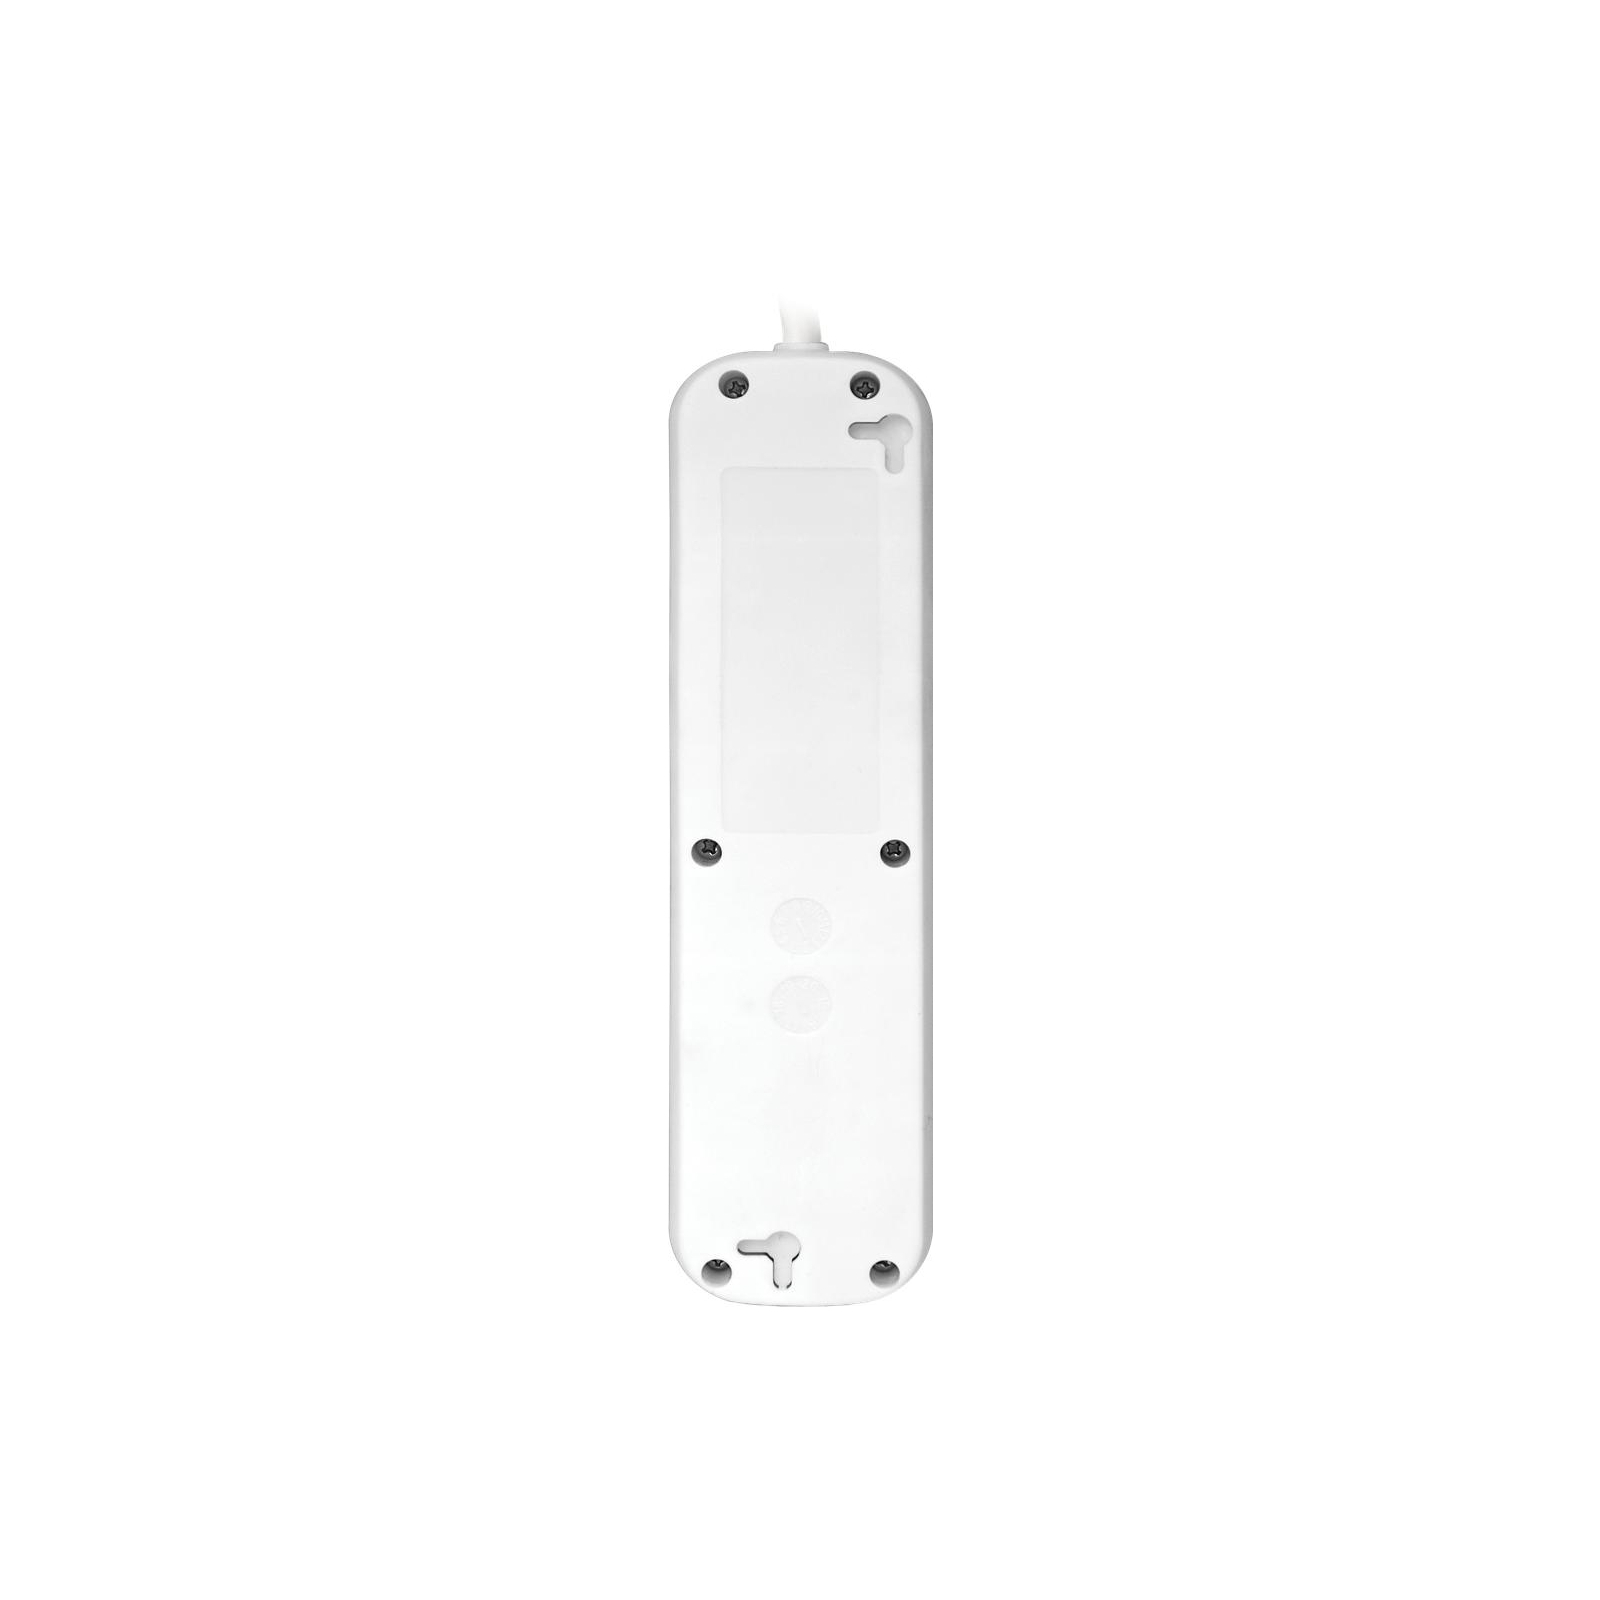 Сетевой удлинитель Defender S418 1.8 m 4 роз switch white (99237) изображение 3